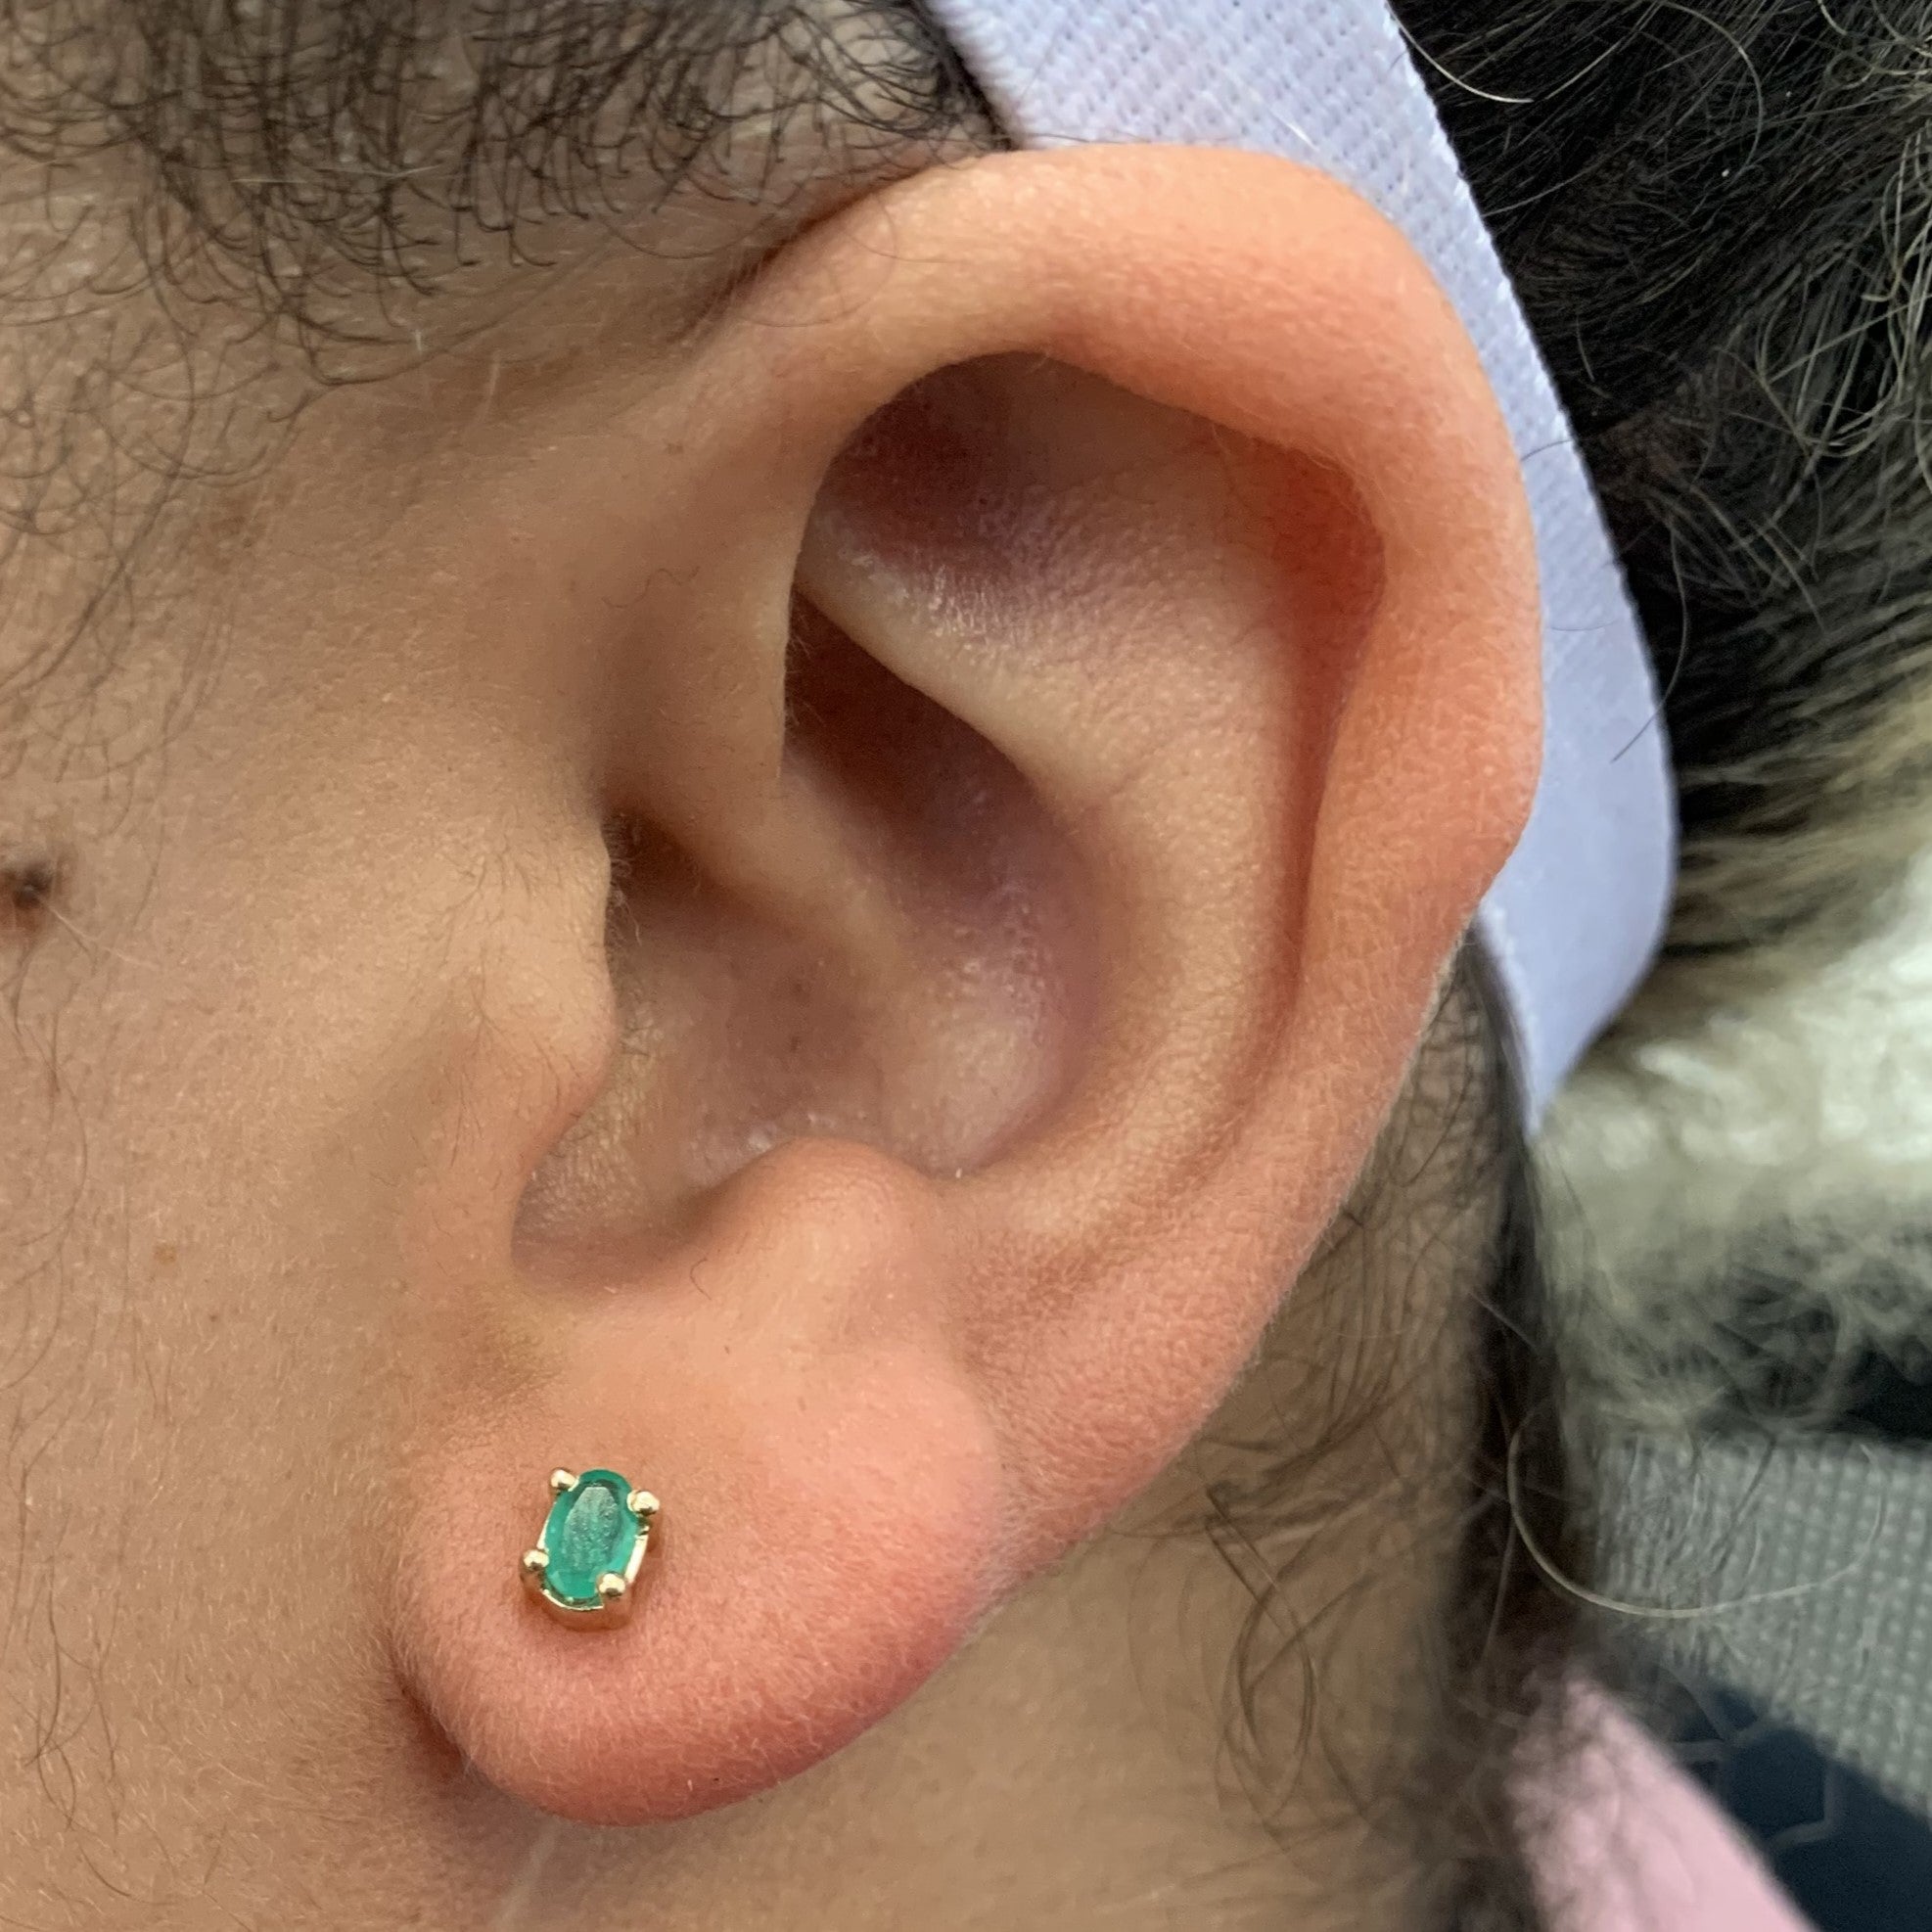 Emerald Stud Earrings | 0.35ctw |